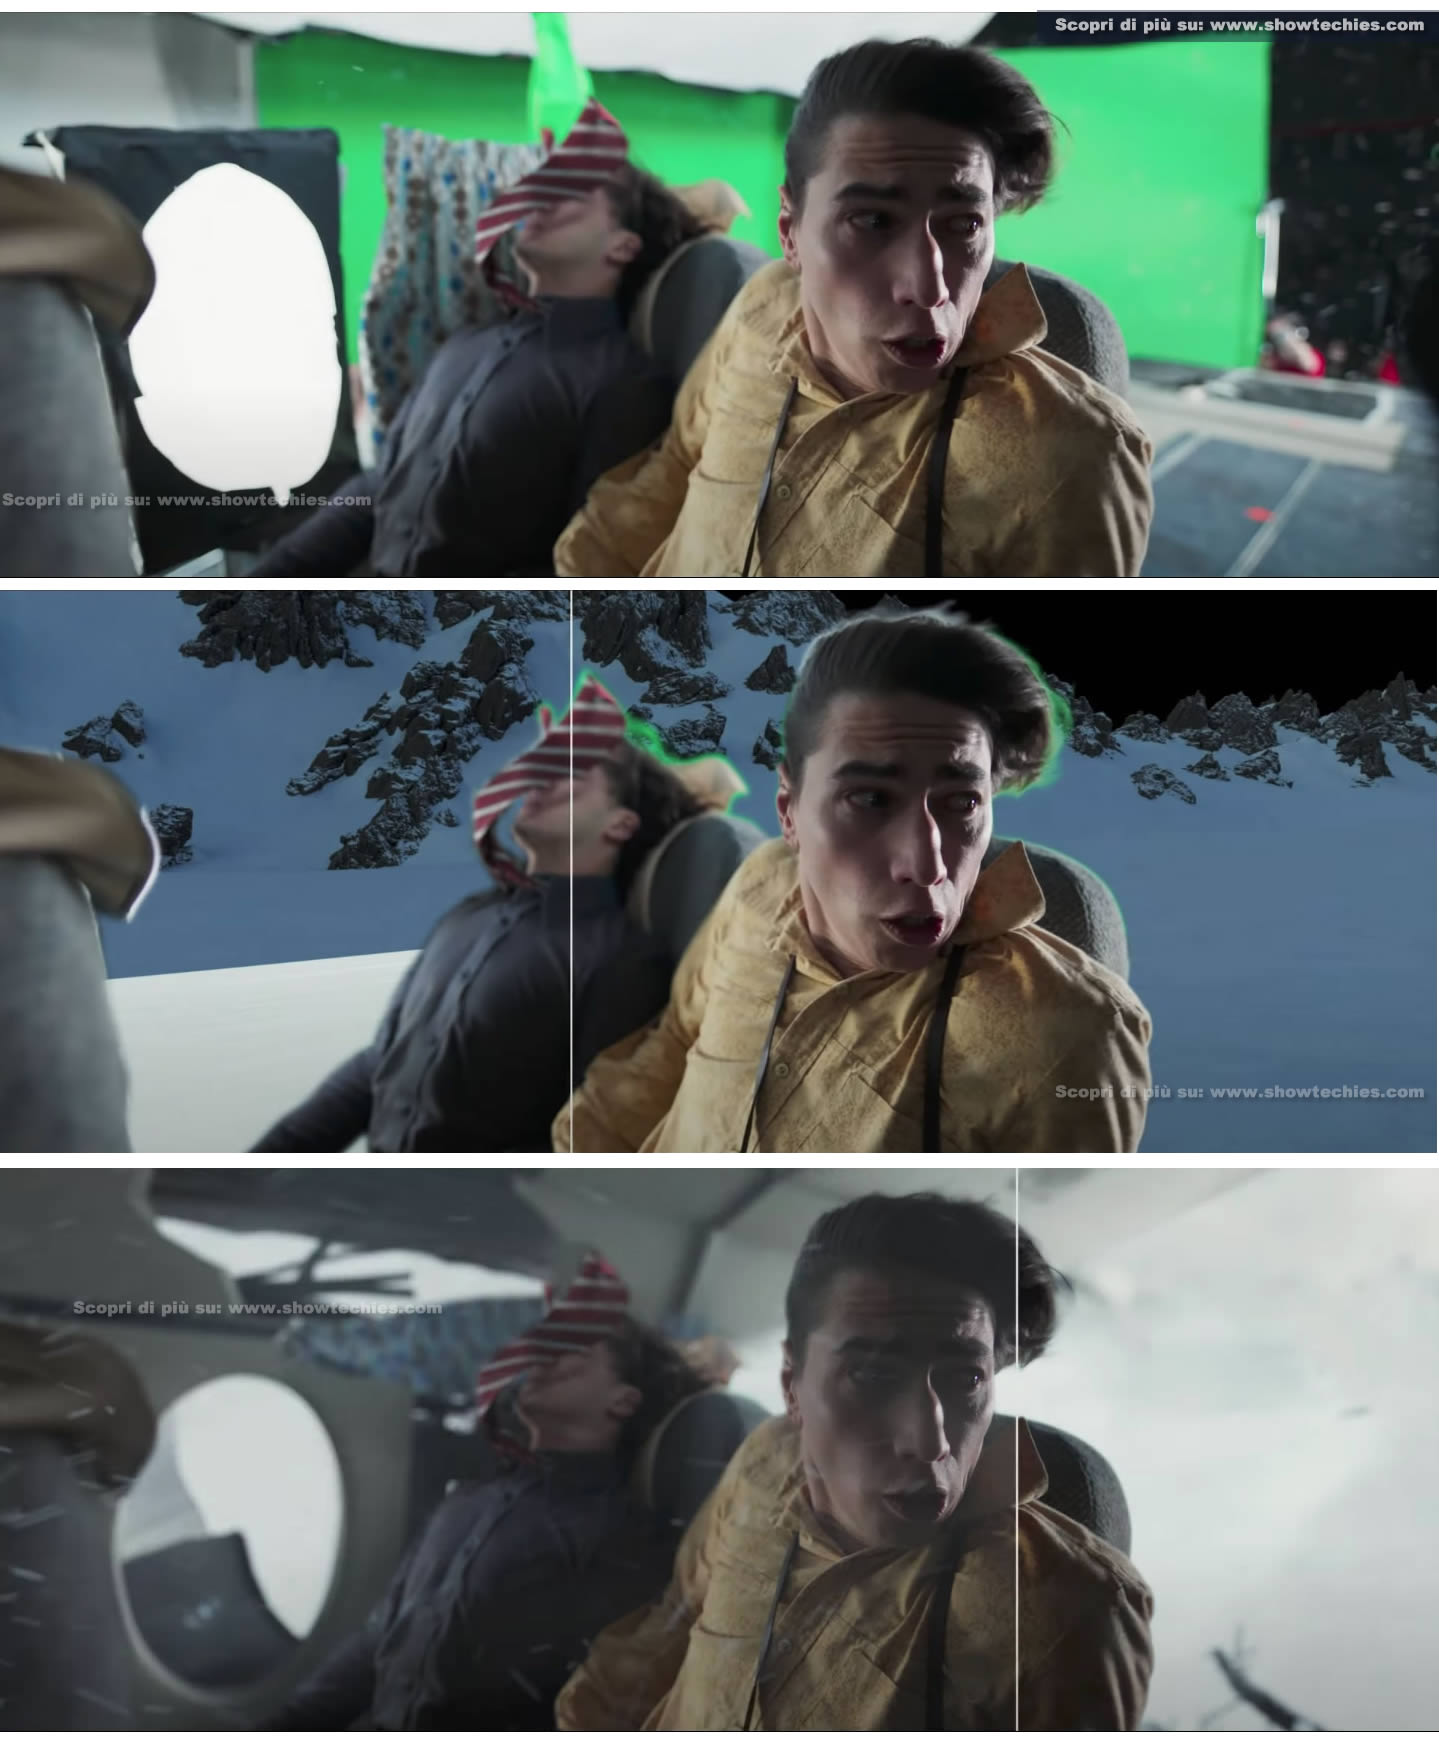 VFX con green screen in 3 set per primi piani attori durante disastro aereo, Società della Neve VFX